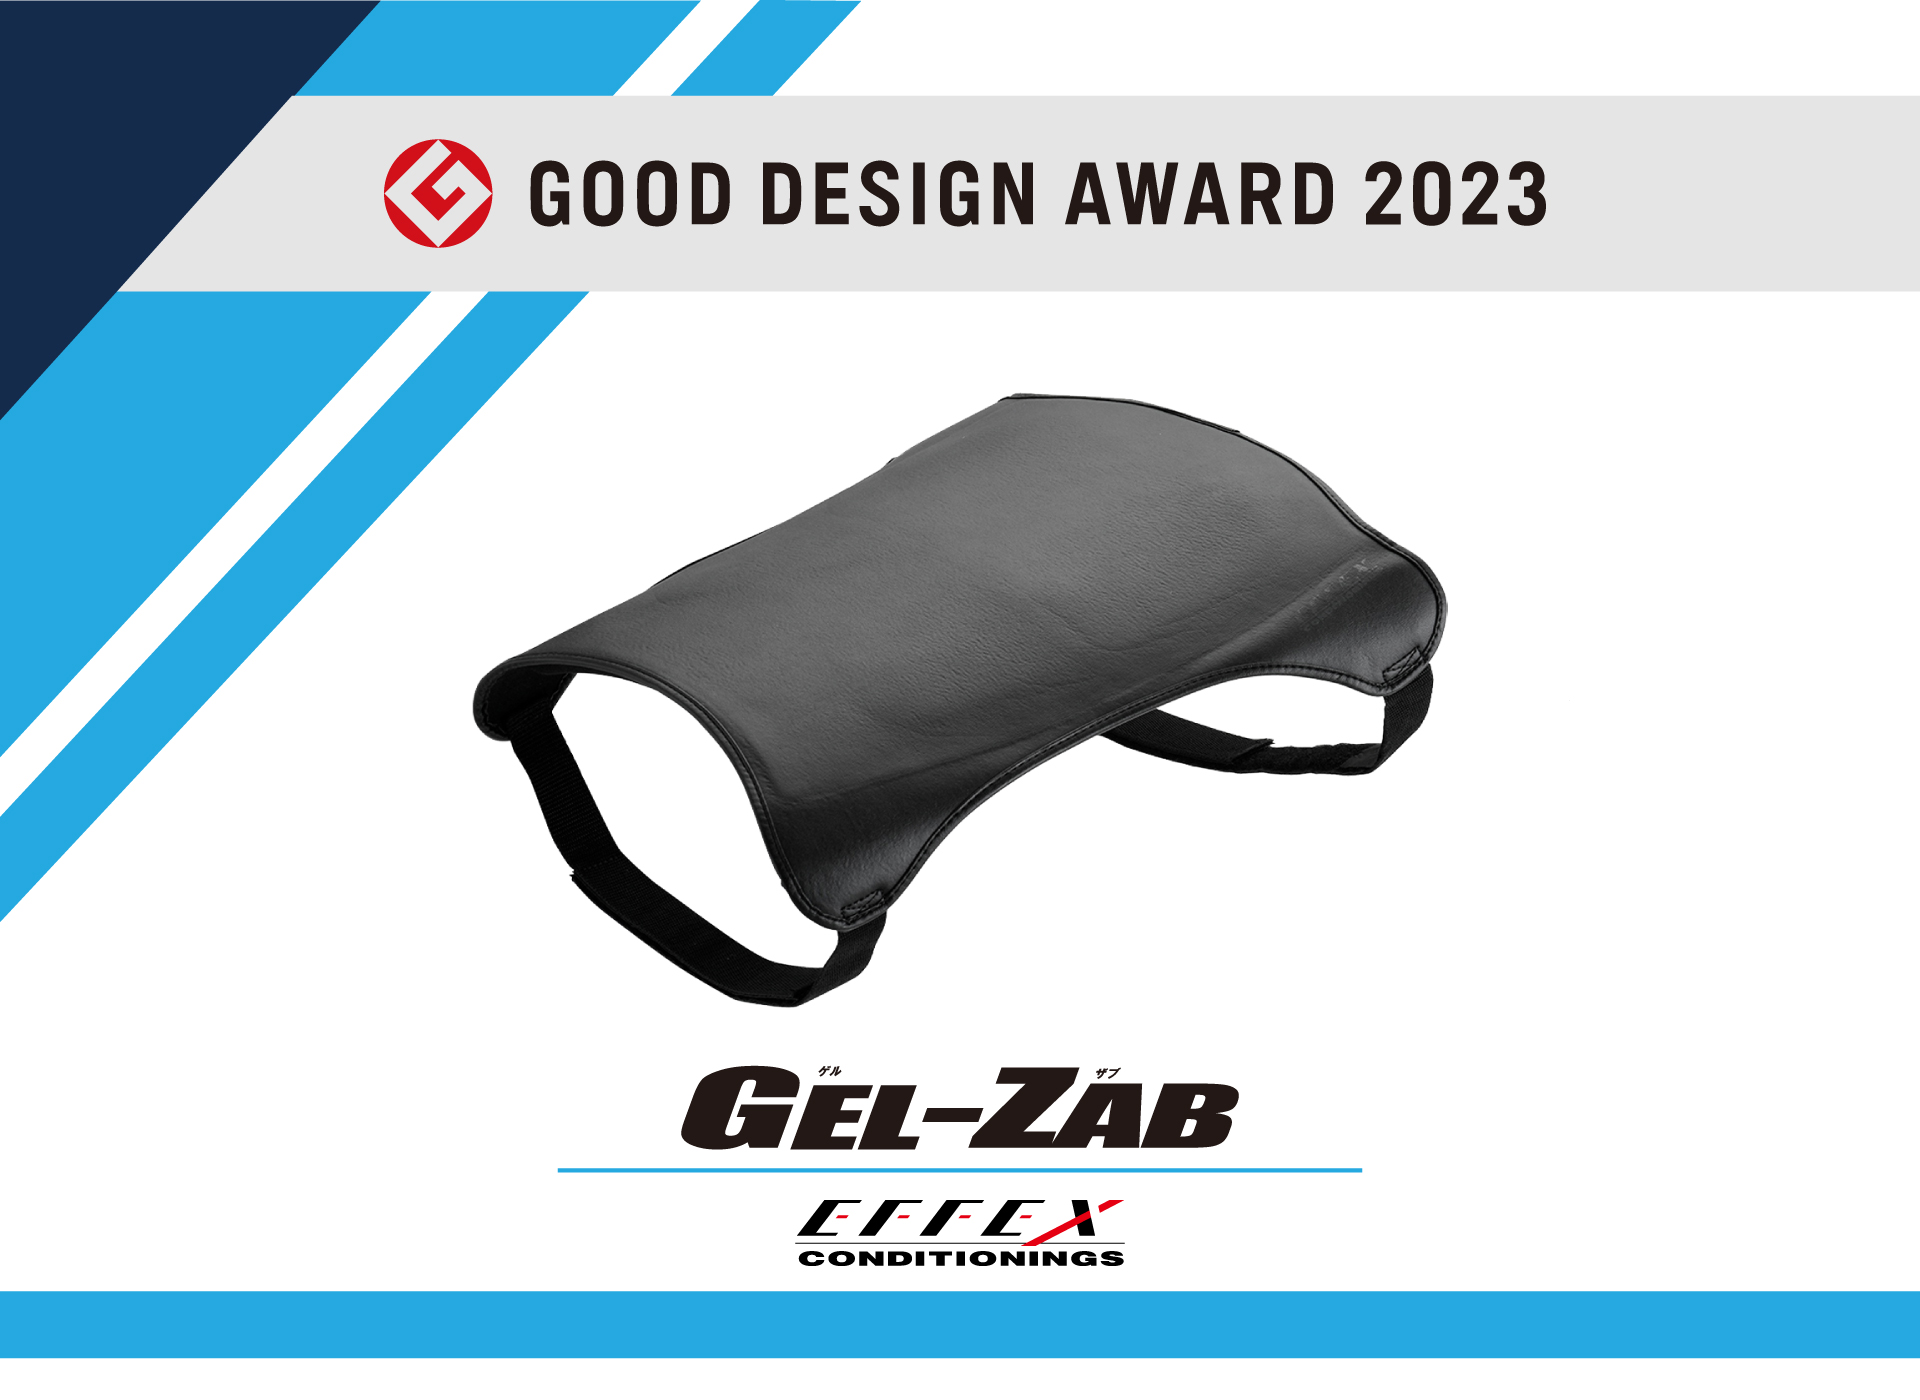 プロトオリジナルブランド「EFFEX / エフェックス」の「GEL-ZAB / ゲルザブ」が、「GOOD DESIGN AWARD 2023」を受賞しました。